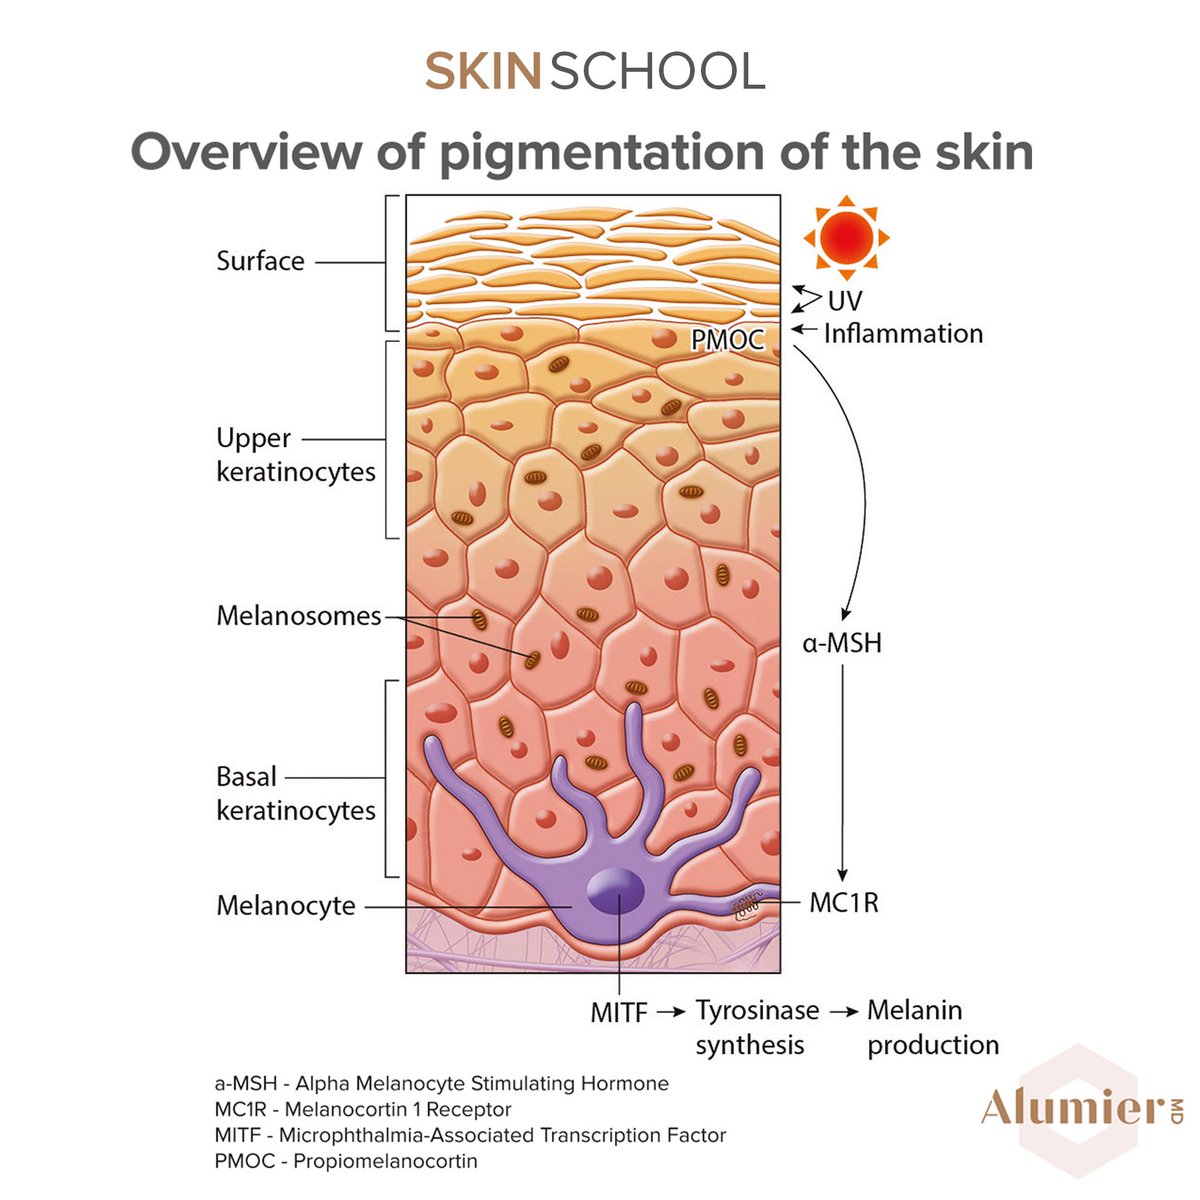 Какую функцию выполняет меланин образующийся в коже